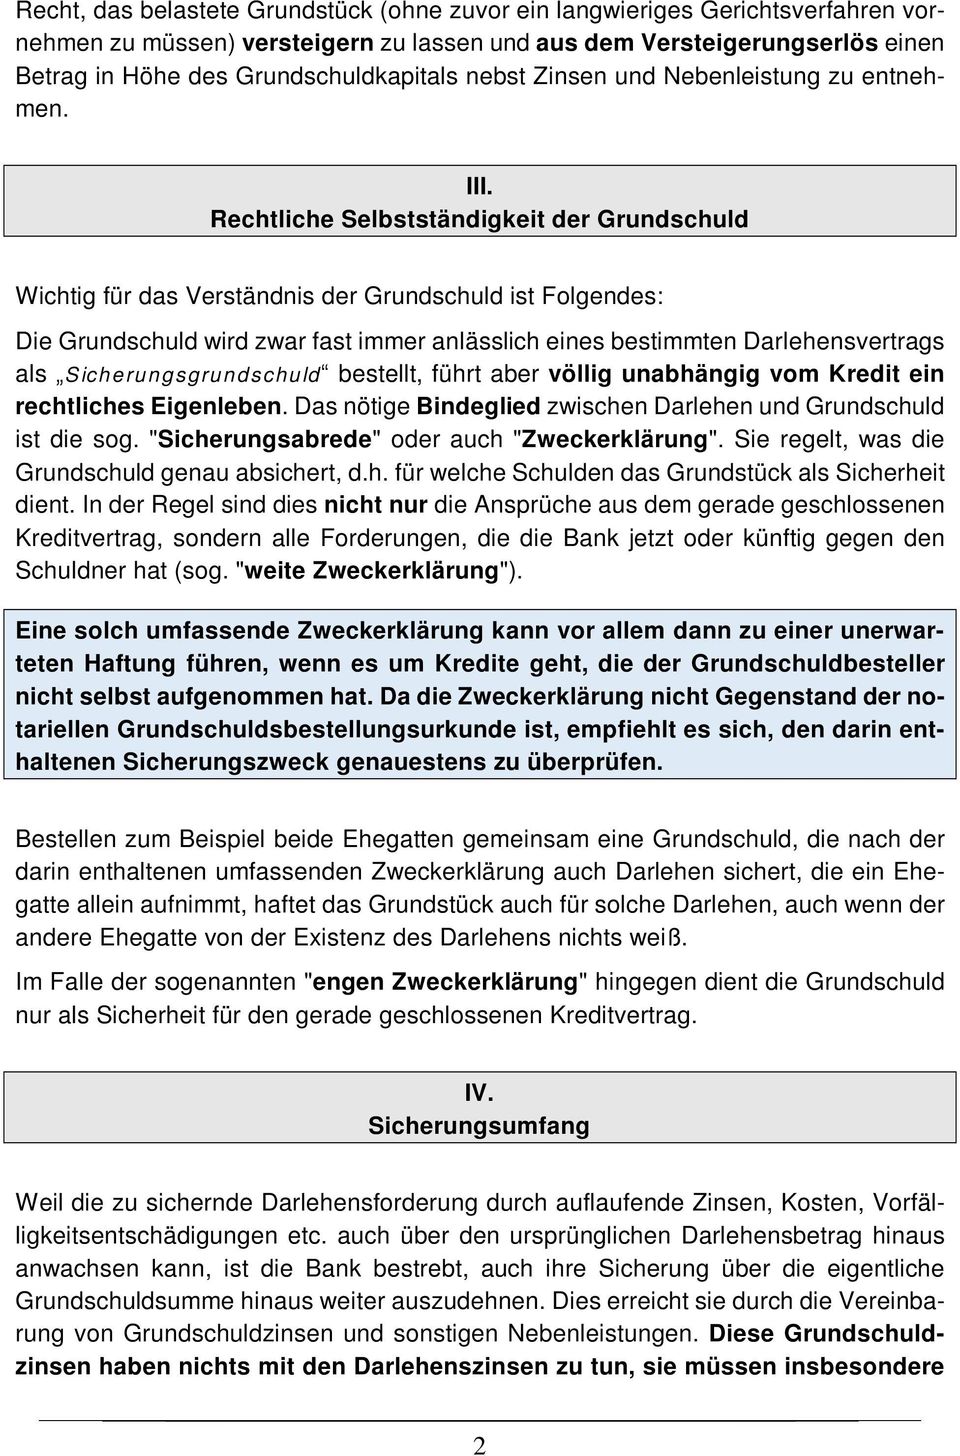 Merkblatt Fur Die Bestellung Von Grundschulden Pdf Kostenfreier Download